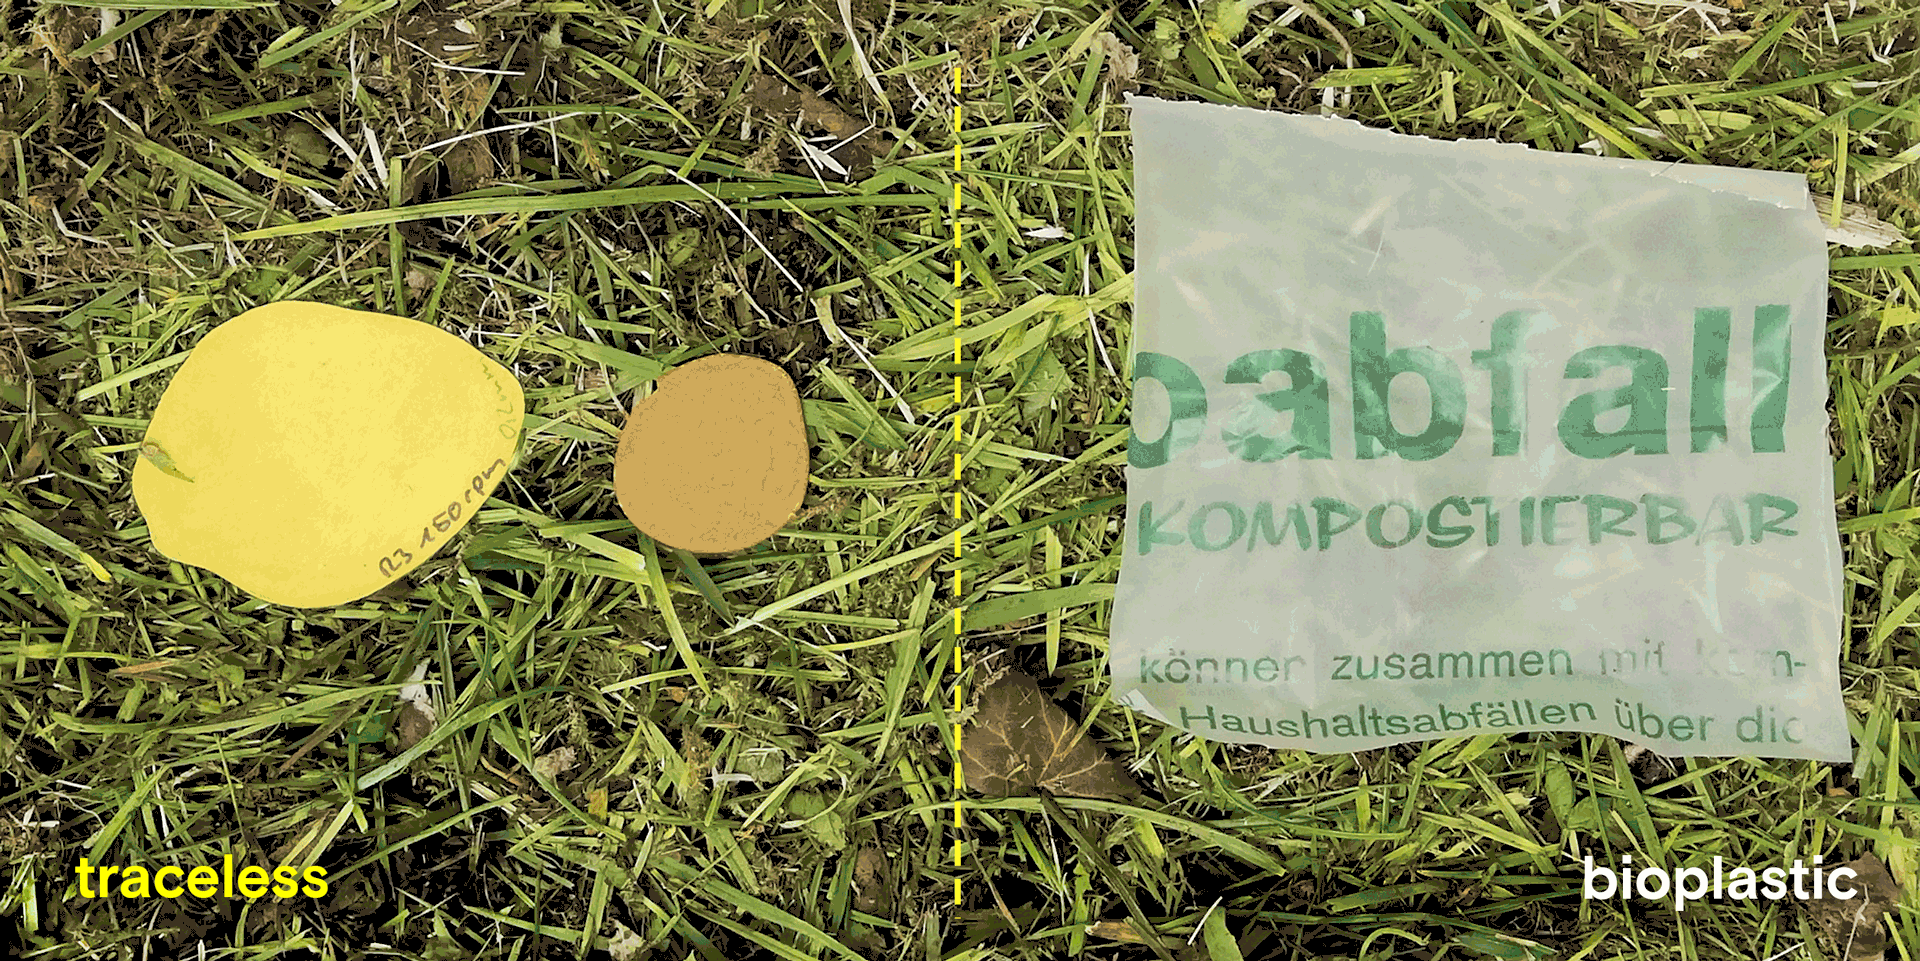 Traceless ist Bioplastik einen großen Schritt voraus in Sachen Nachhaltigkeit. Das zeigt ein Kompostierbarkeitstest: Traceless-Folien (links, Dicke: 0,2 und 1,6 mm) im Vergleich zum handelsüblichen Bioabfallbeutel (rechts, Dicke: 0,03 mm). Credit: Traceless Materials GmbH